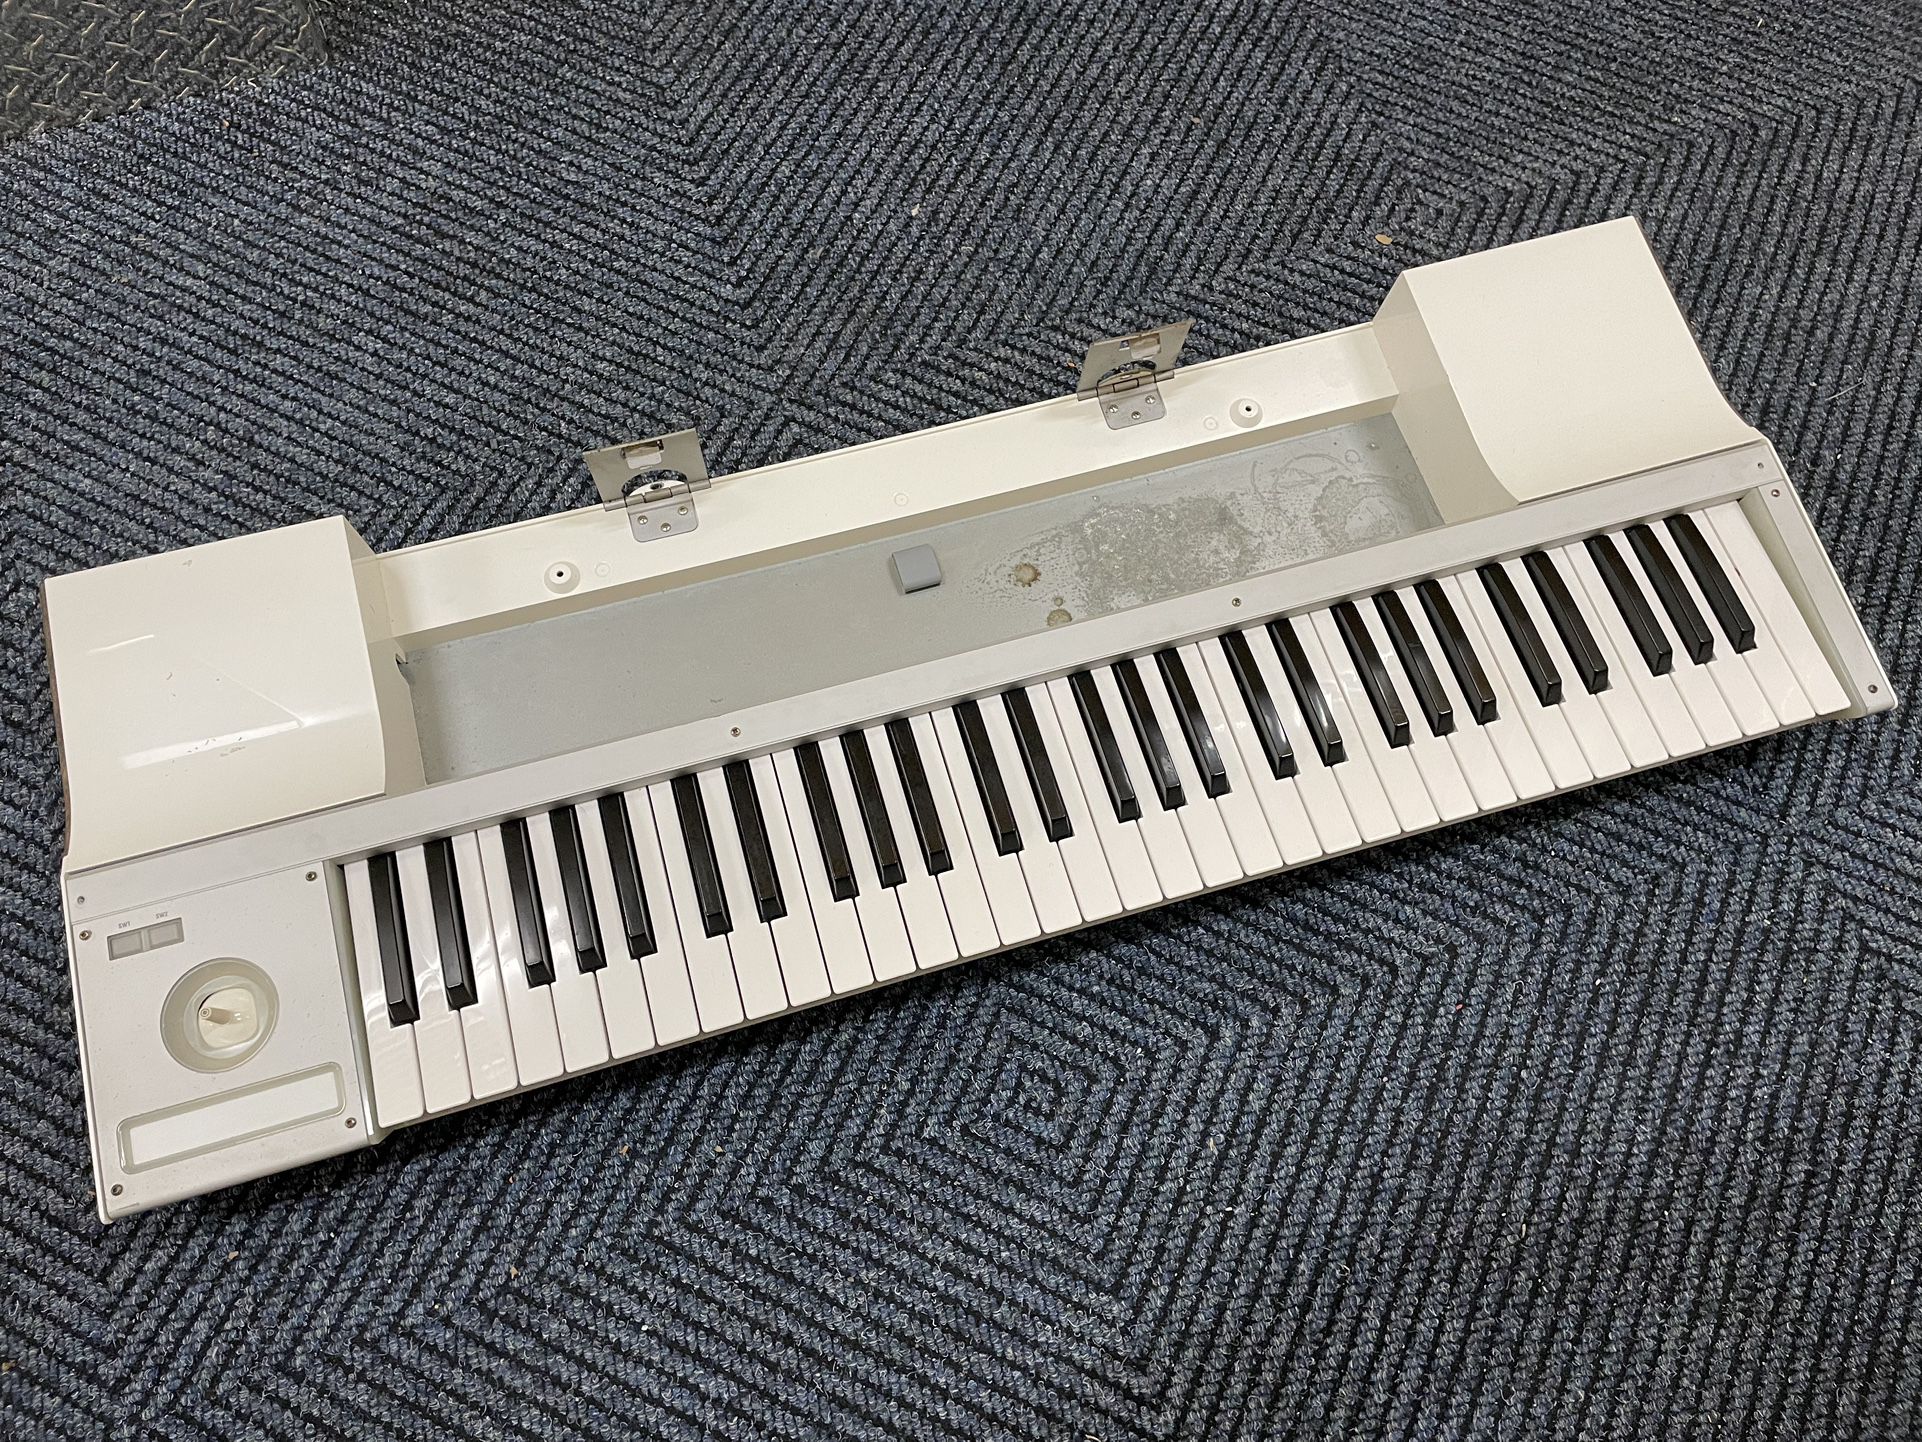 Korg M3 Keyboard 🎹 $350